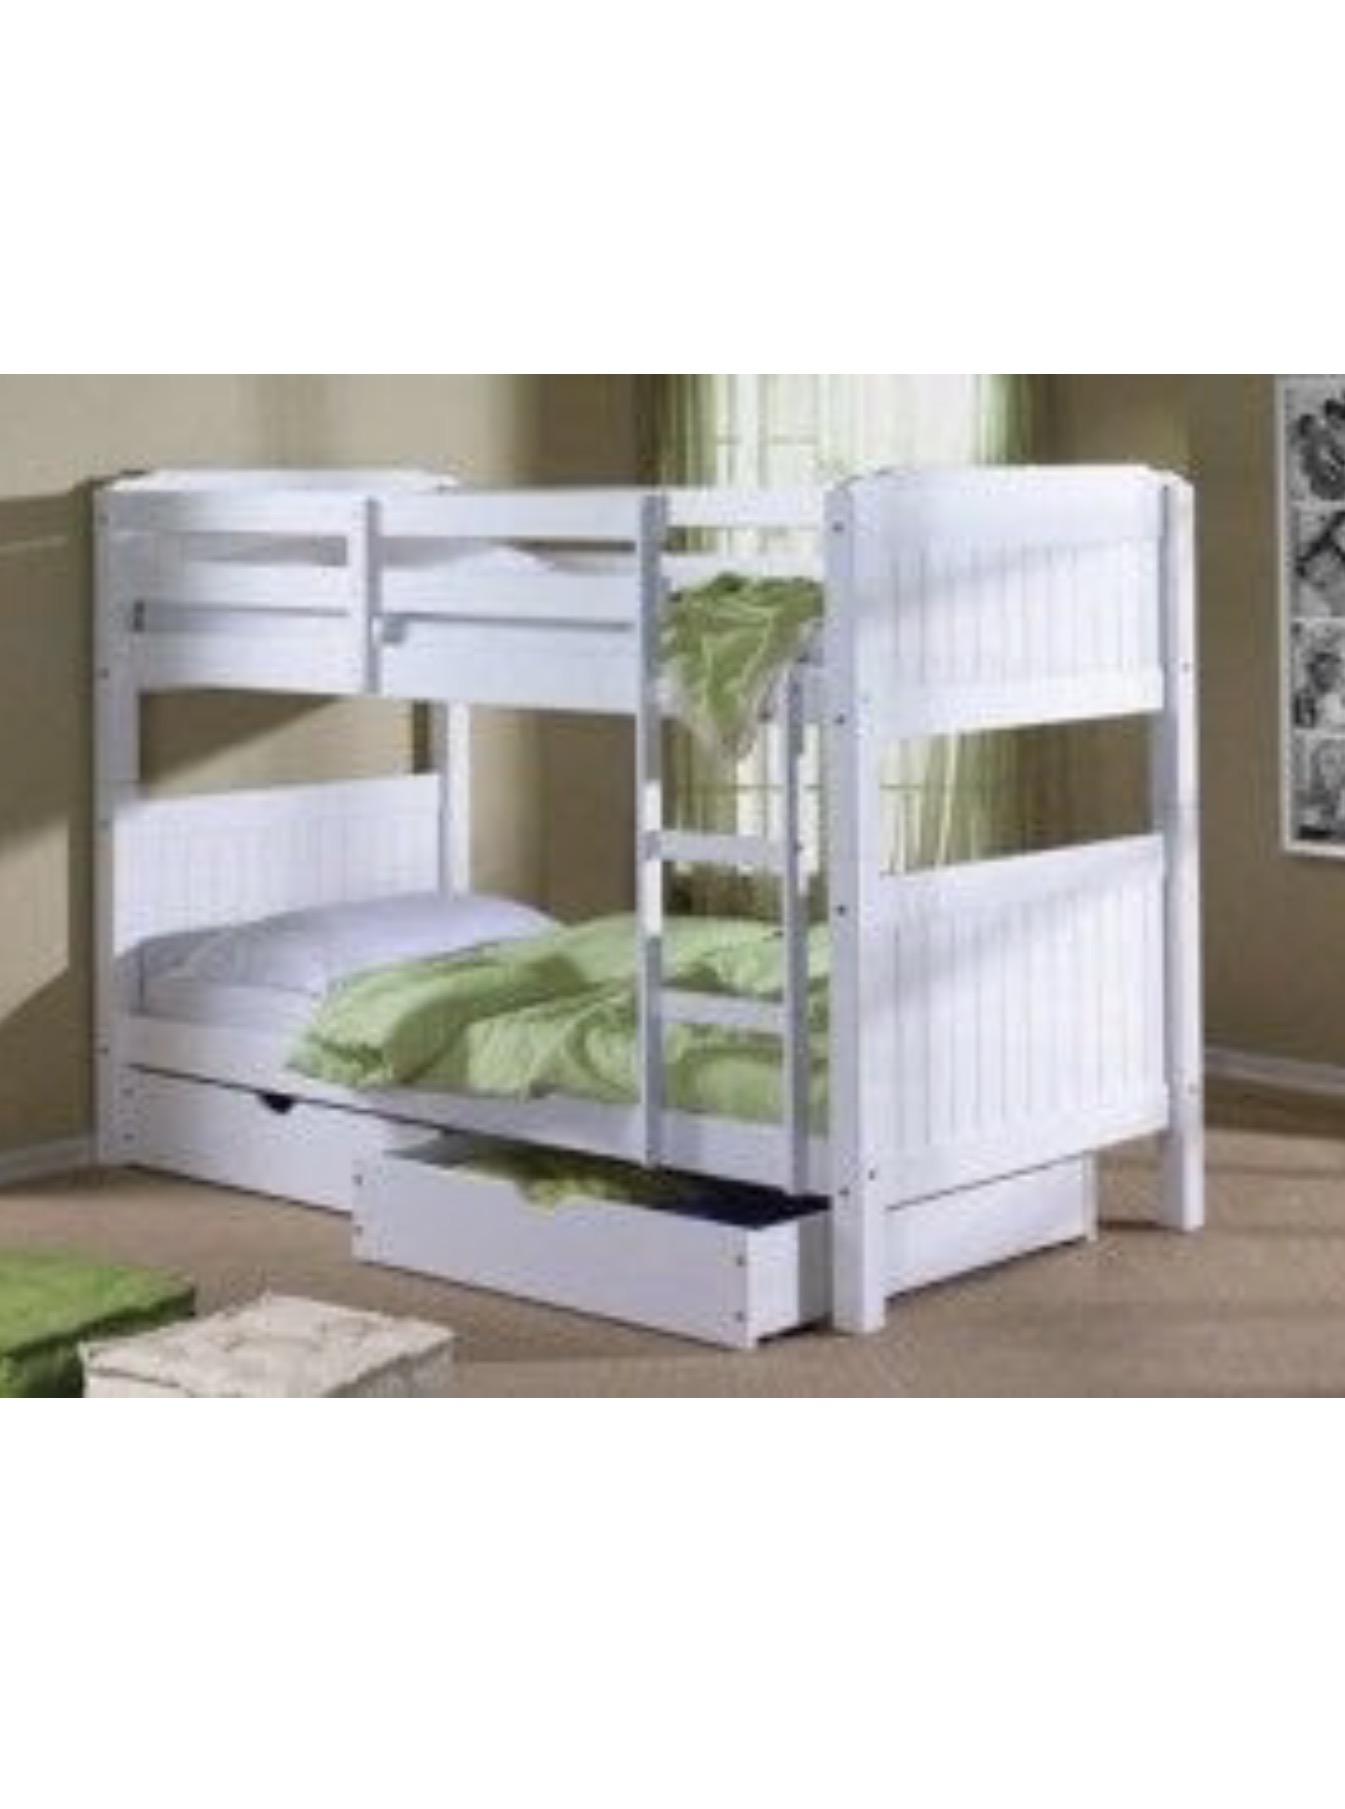 bunk bed sets on sale